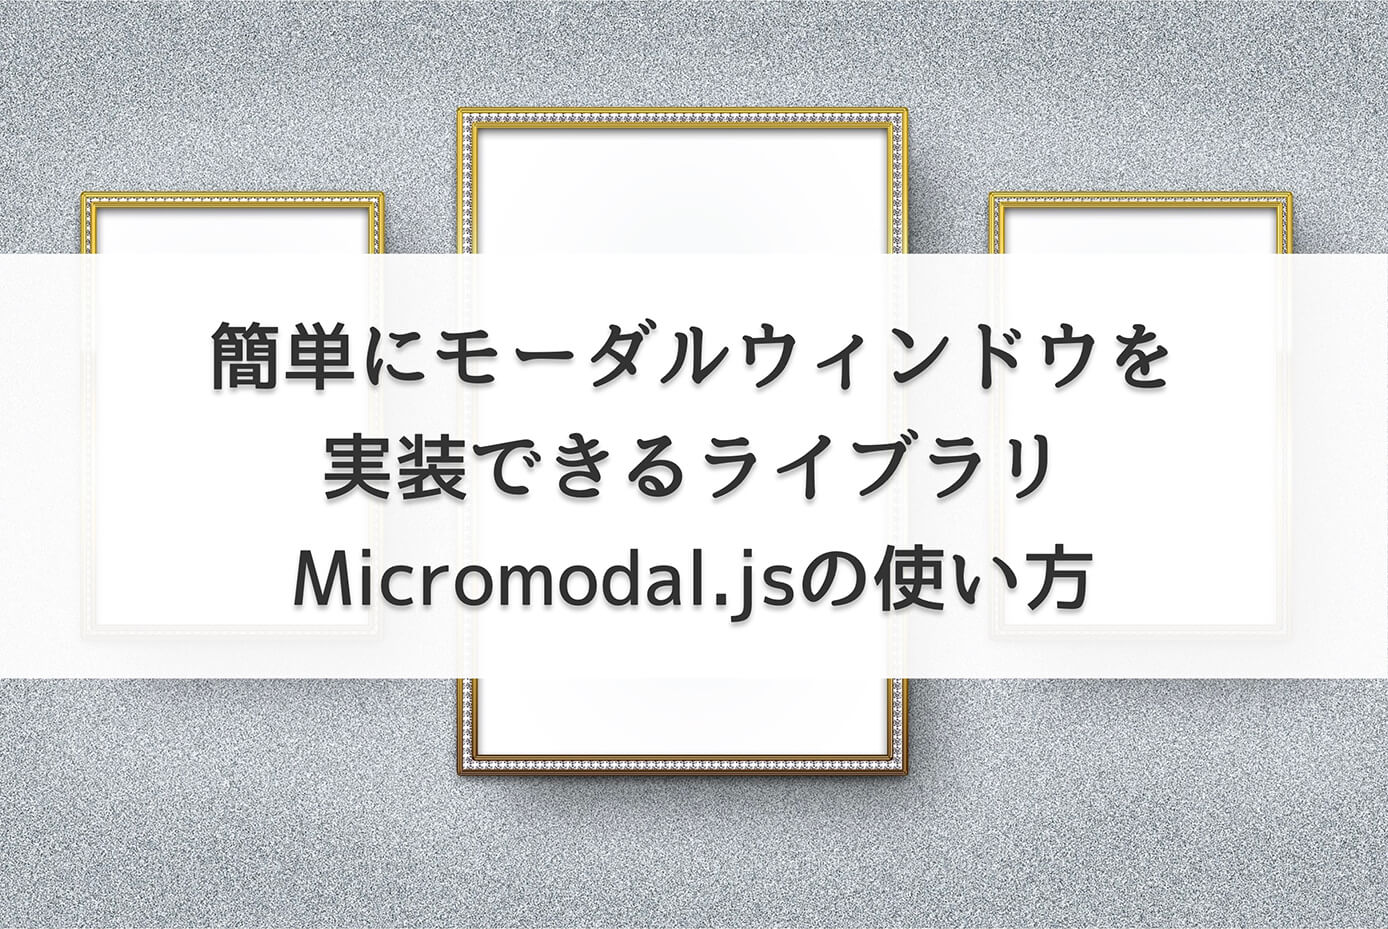 簡単にモーダルウィンドウを実装できるライブラリ Micromodal.jsの使い方